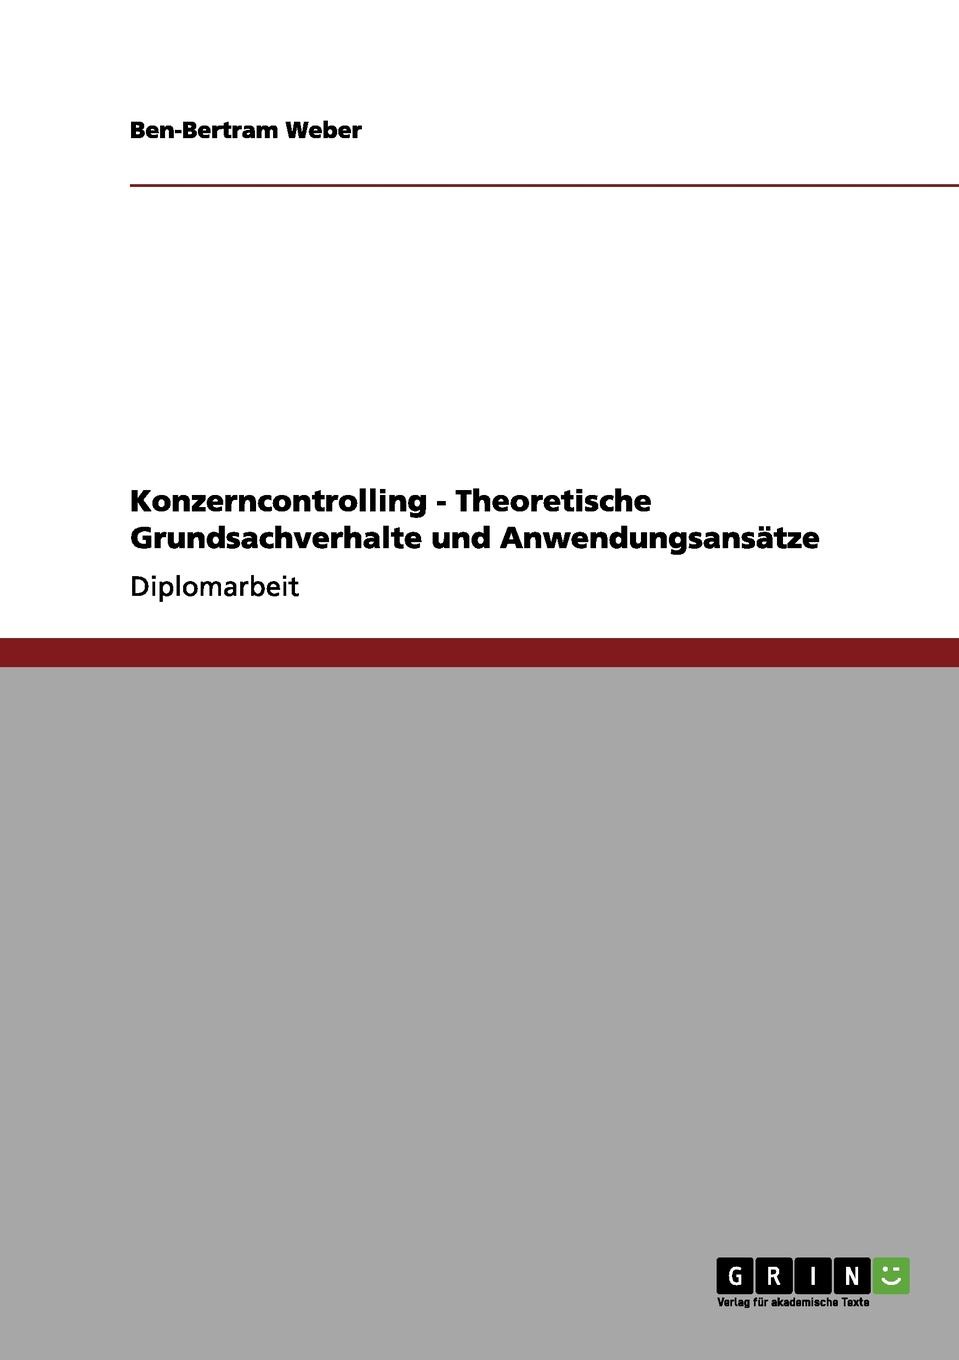 Konzerncontrolling - Theoretische Grundsachverhalte und Anwendungsansatze